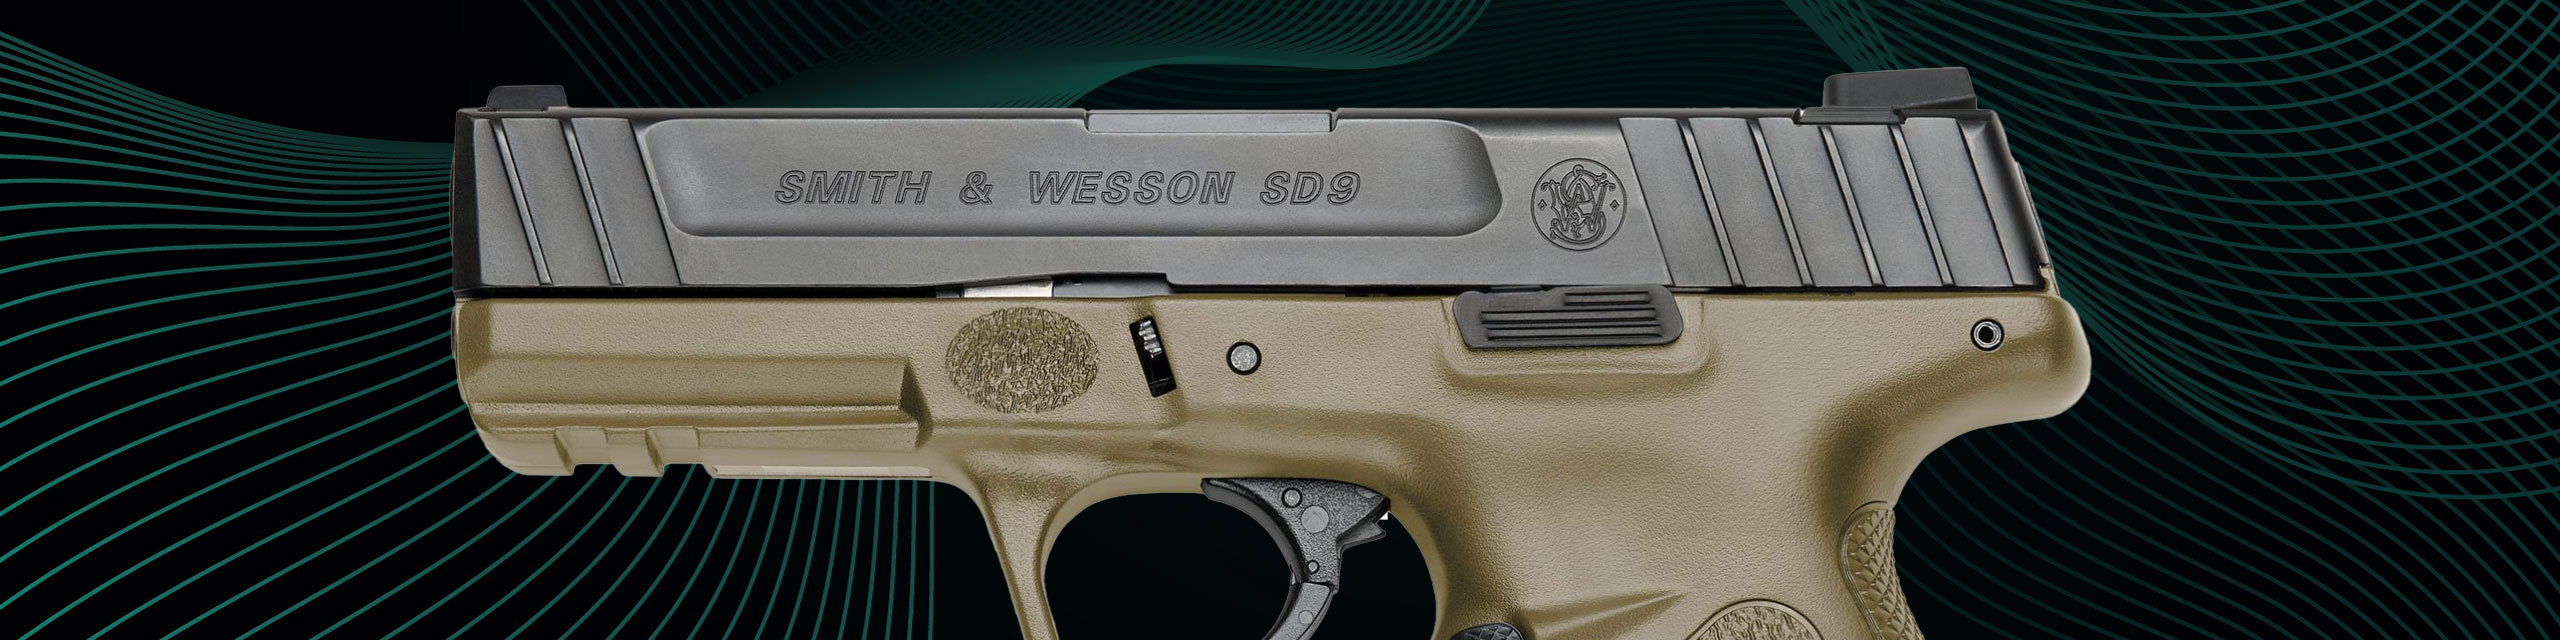 GunPro-Handguns-SmithWesson